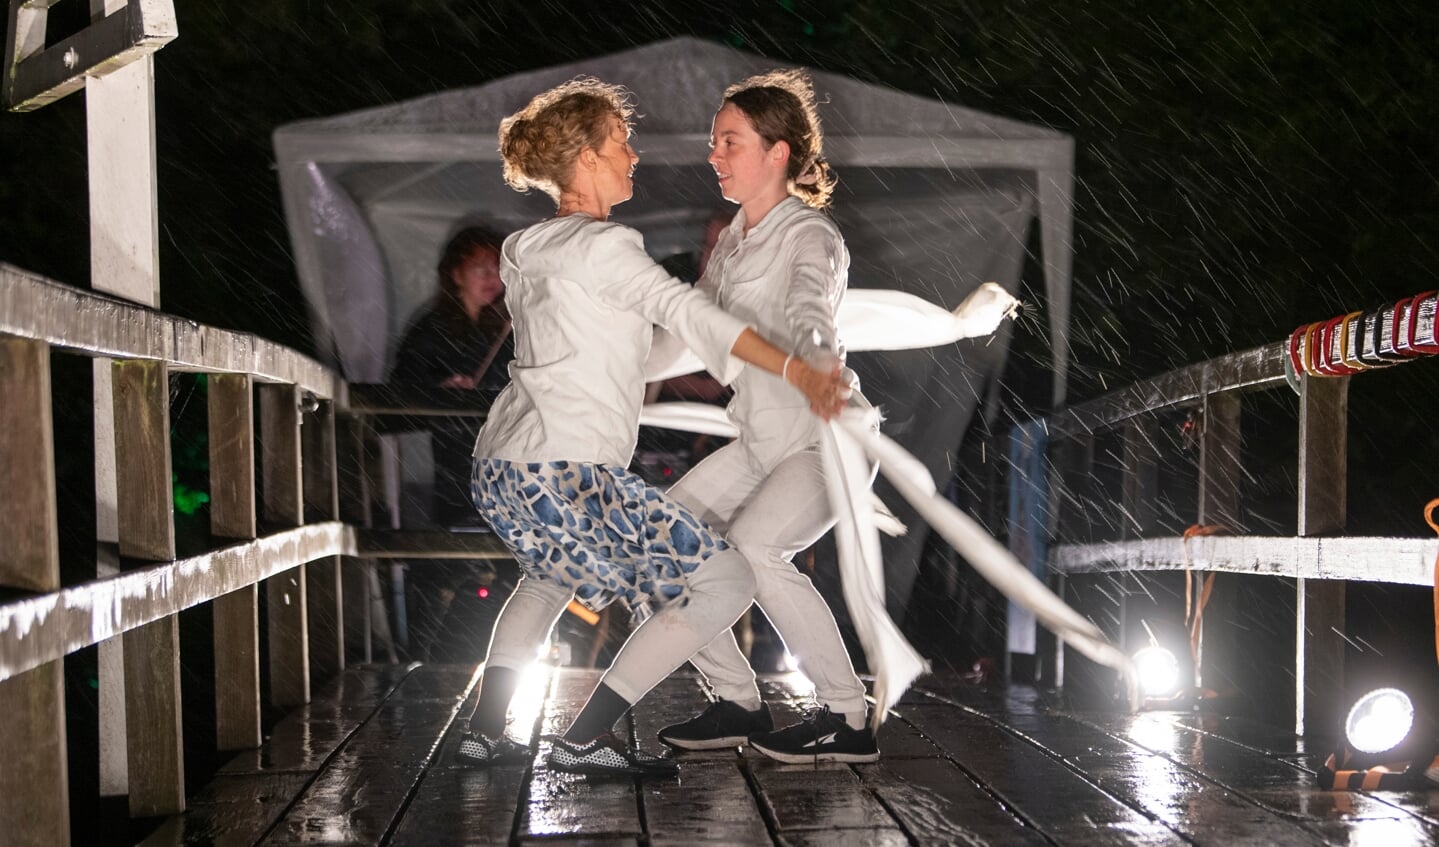 Kaya og Karit Olsen under deres danse-performance sent fredag aften på broen ved Skomagerhus. Foto: 